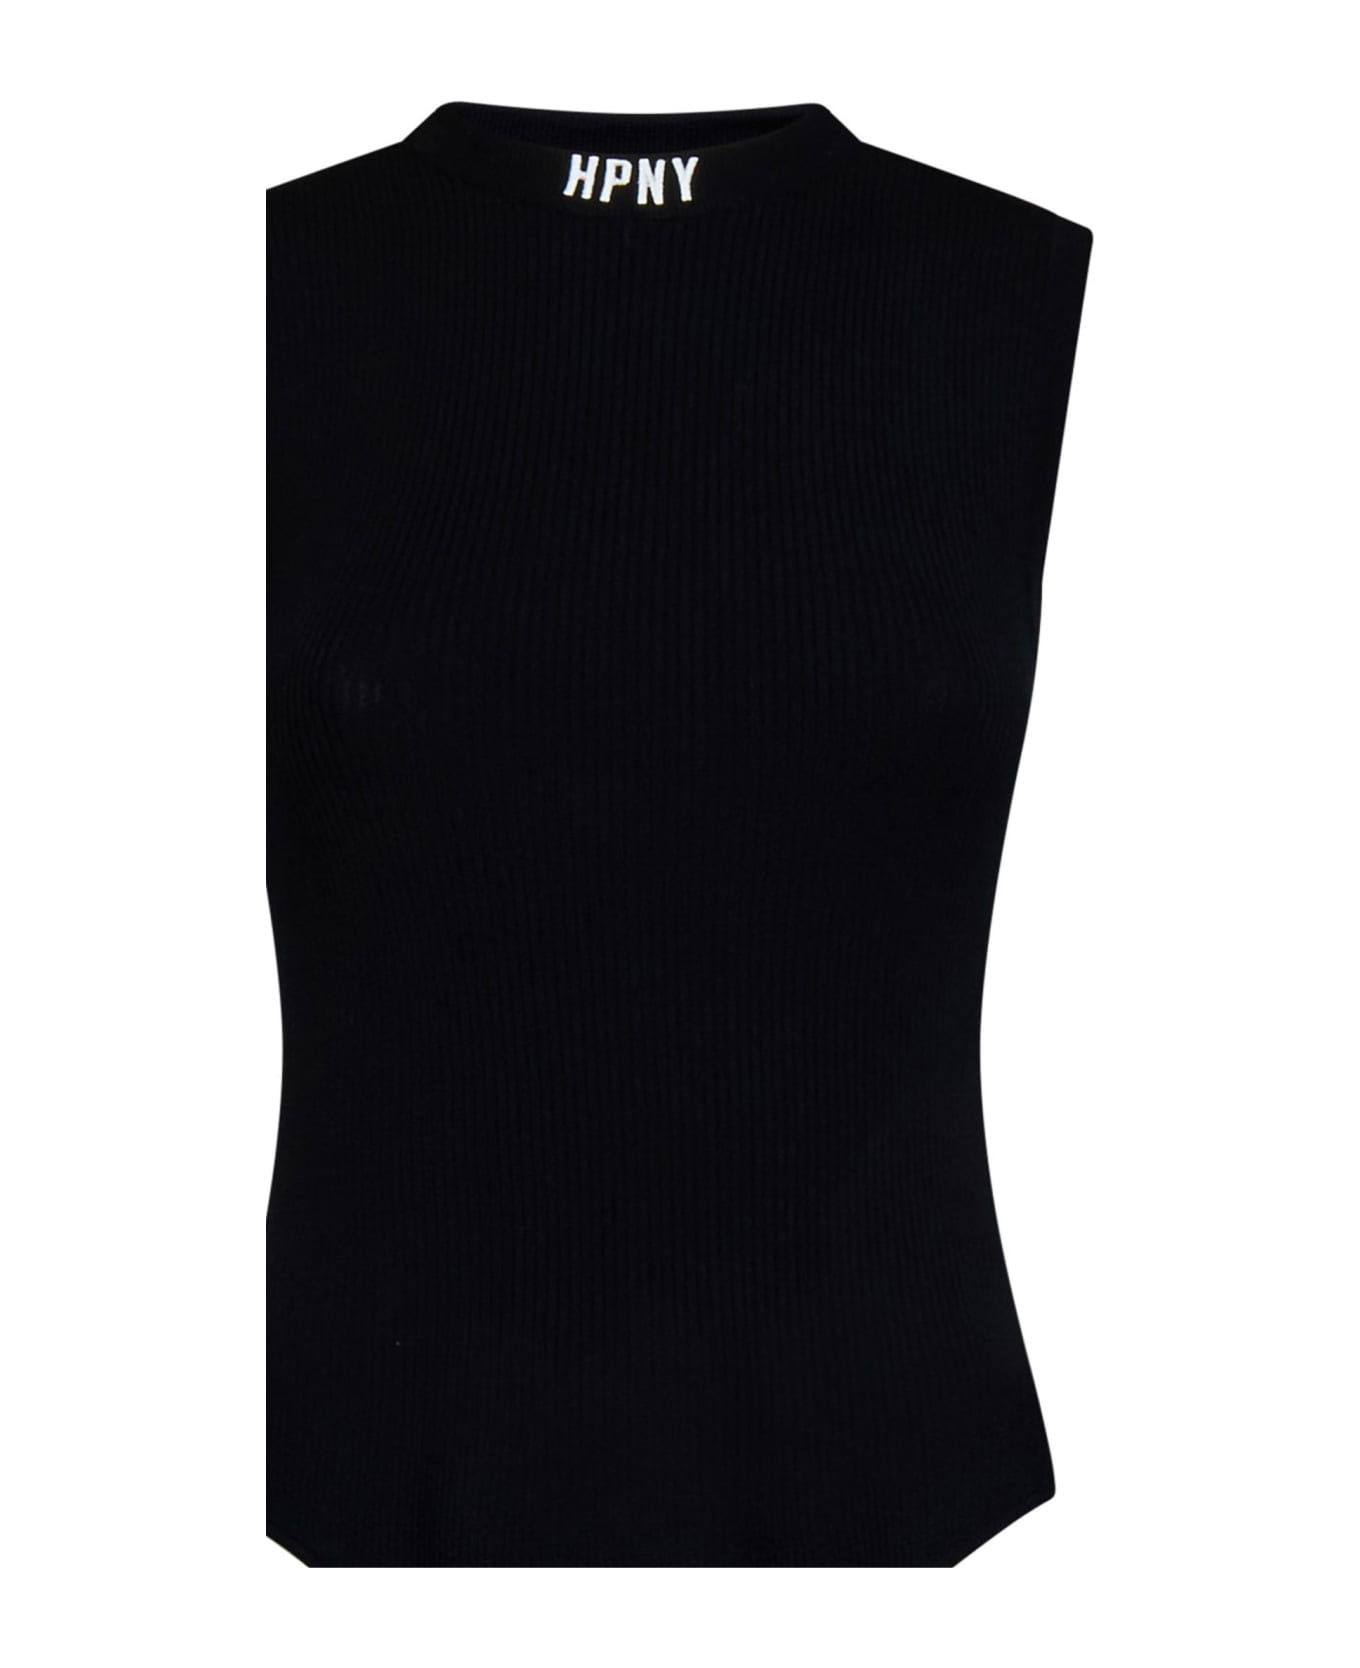 HERON PRESTON Hpny Emb Sl Knit Bodysuit - Black